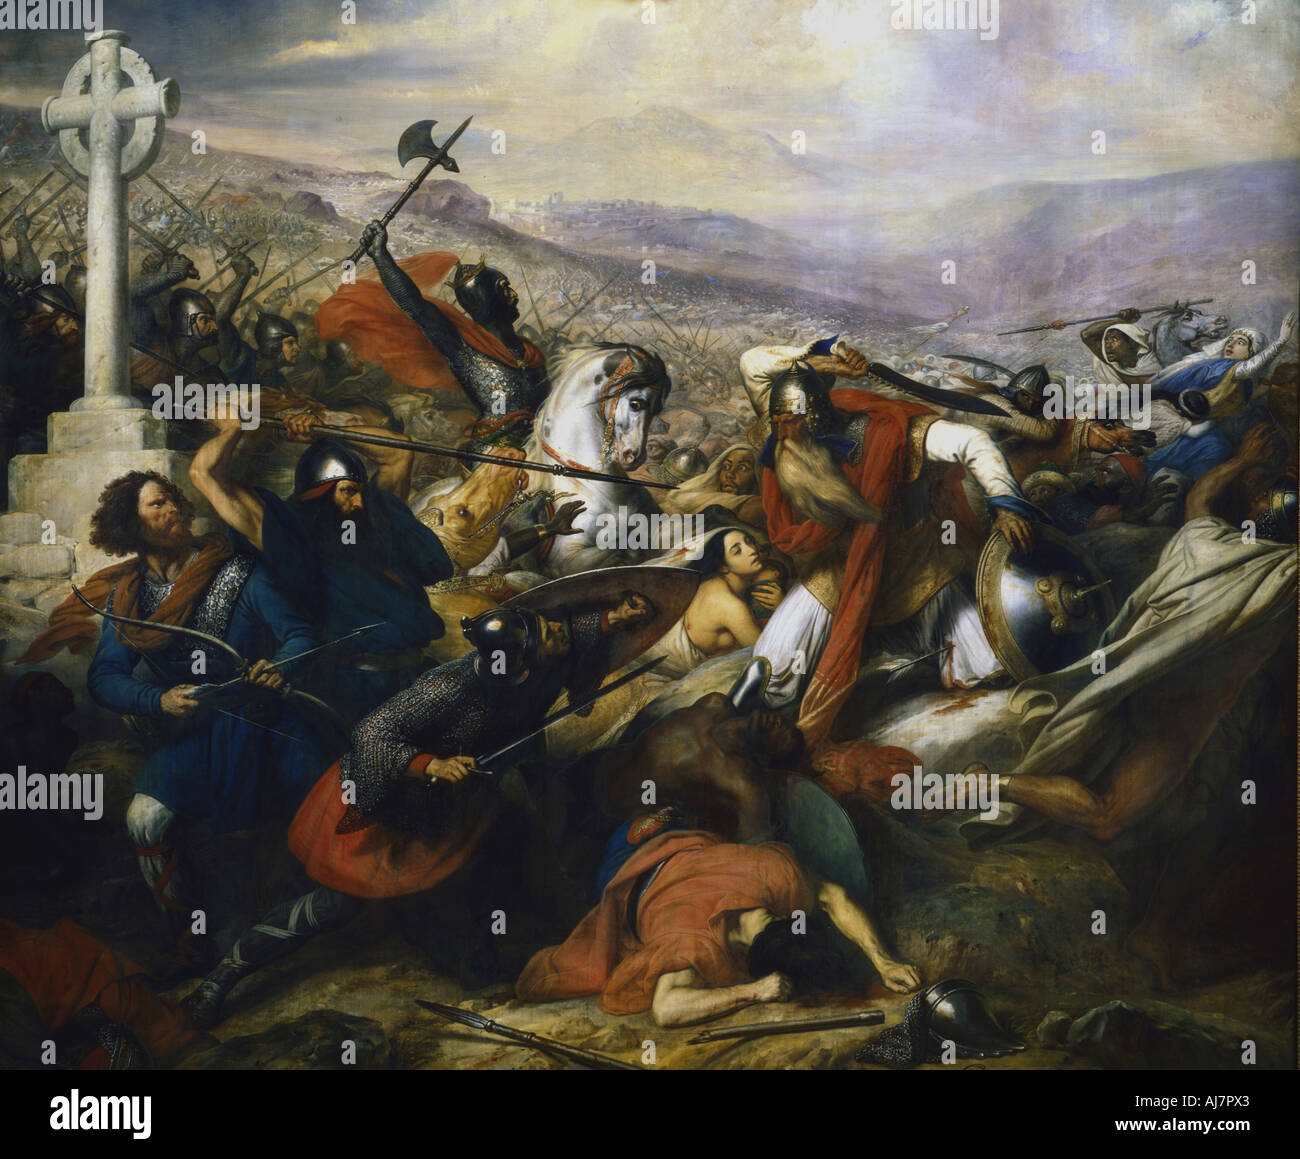 Battaglia di Poitiers, Francia, 732 (1837). Artista: Charles Auguste Guillaume Steuben Foto Stock